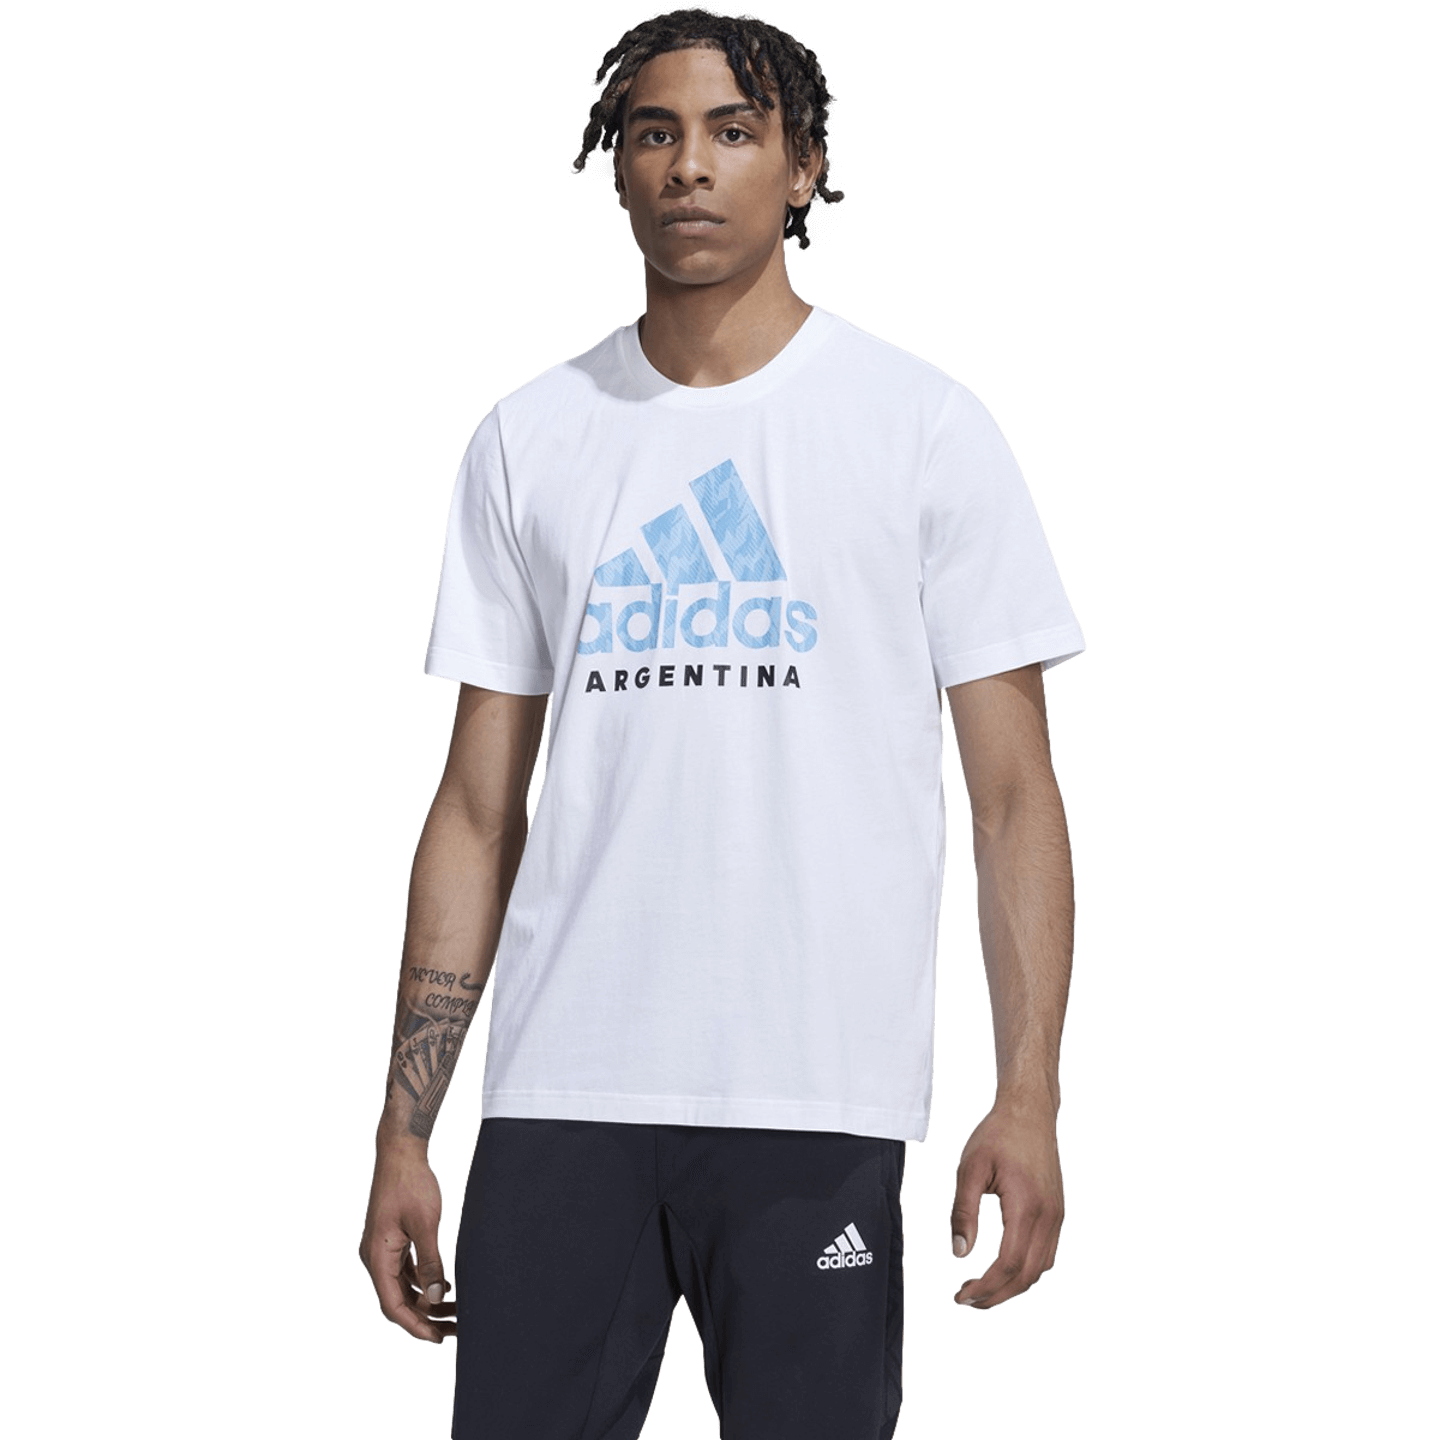 Camiseta con gráfico de ADN de Adidas Argentina